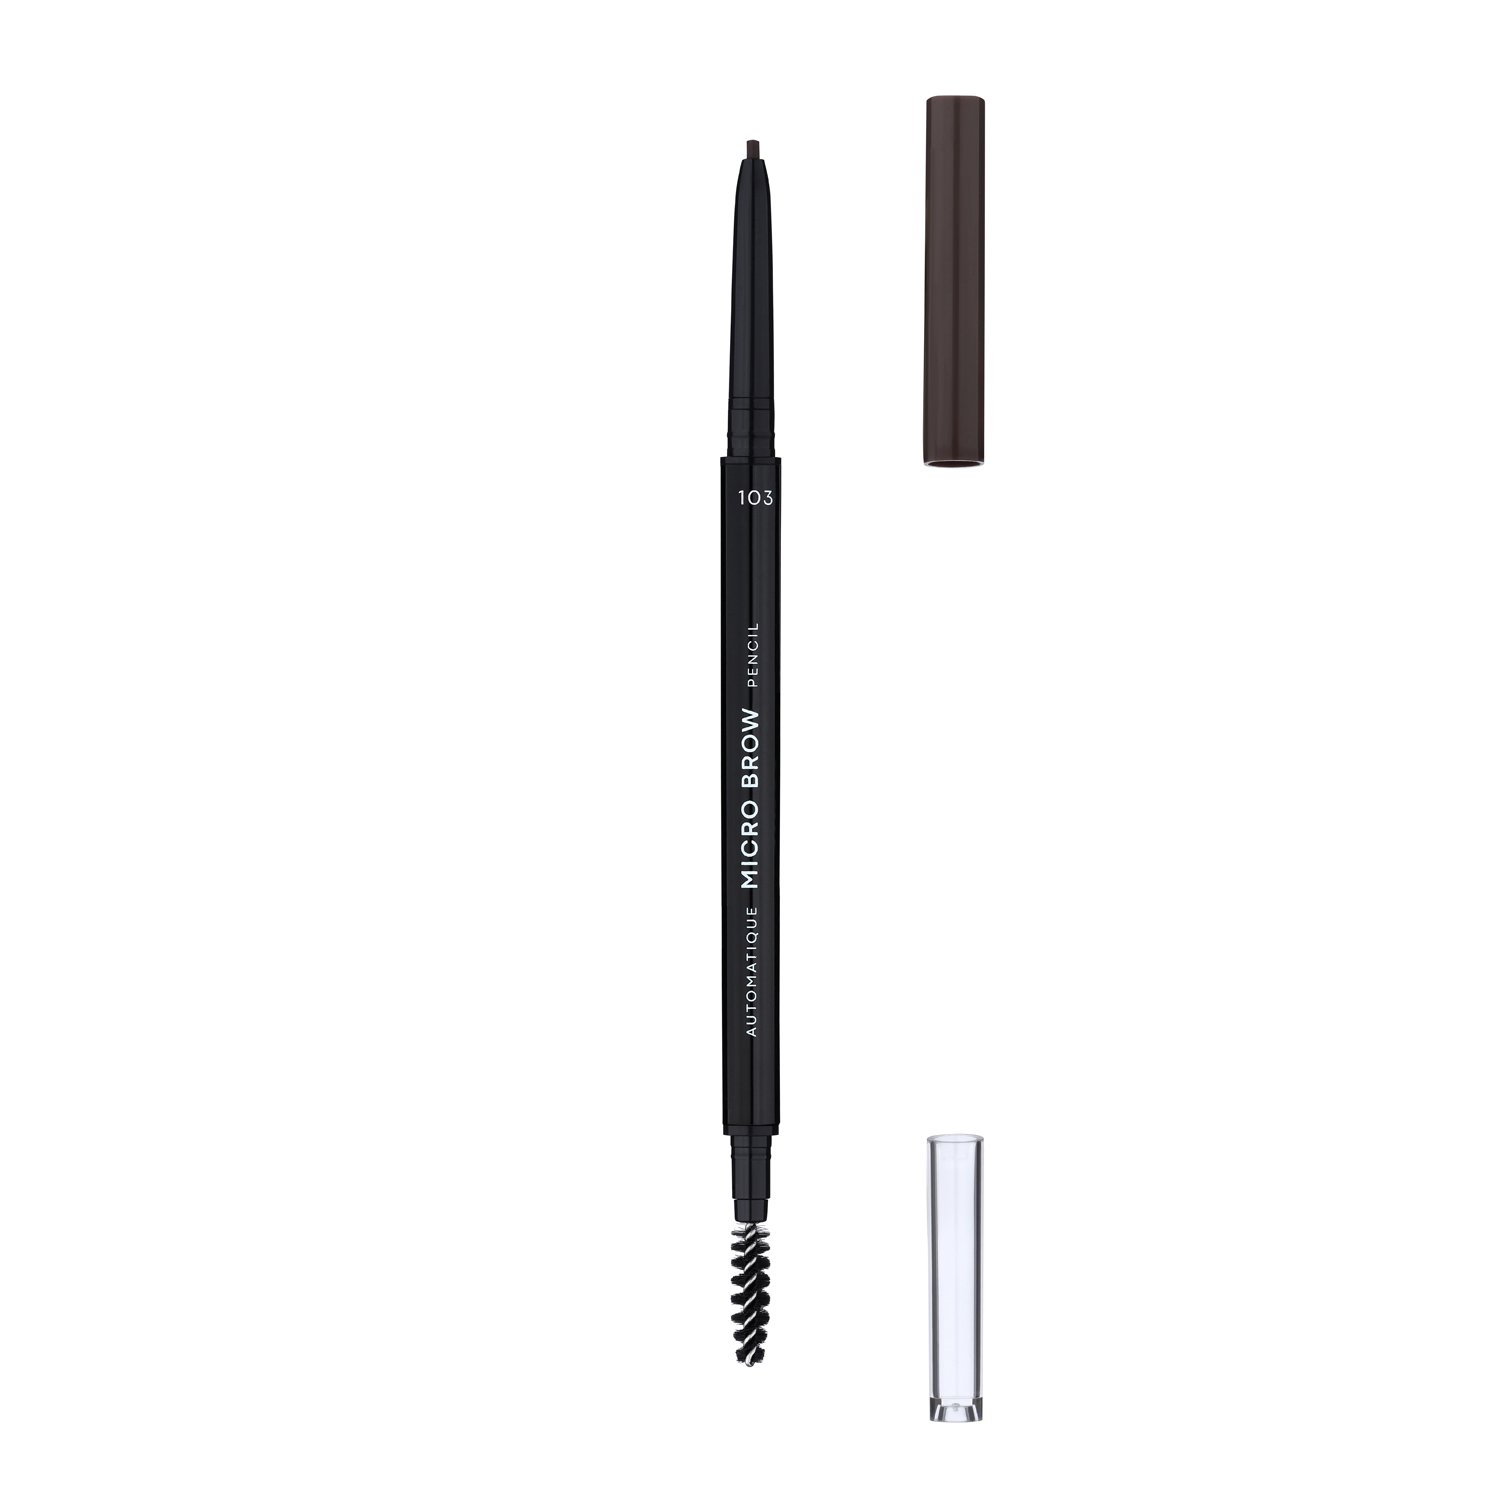 Карандаш для бровей LN Professional Micro Brow Pencil тон 103, 0.12 г - фото 2